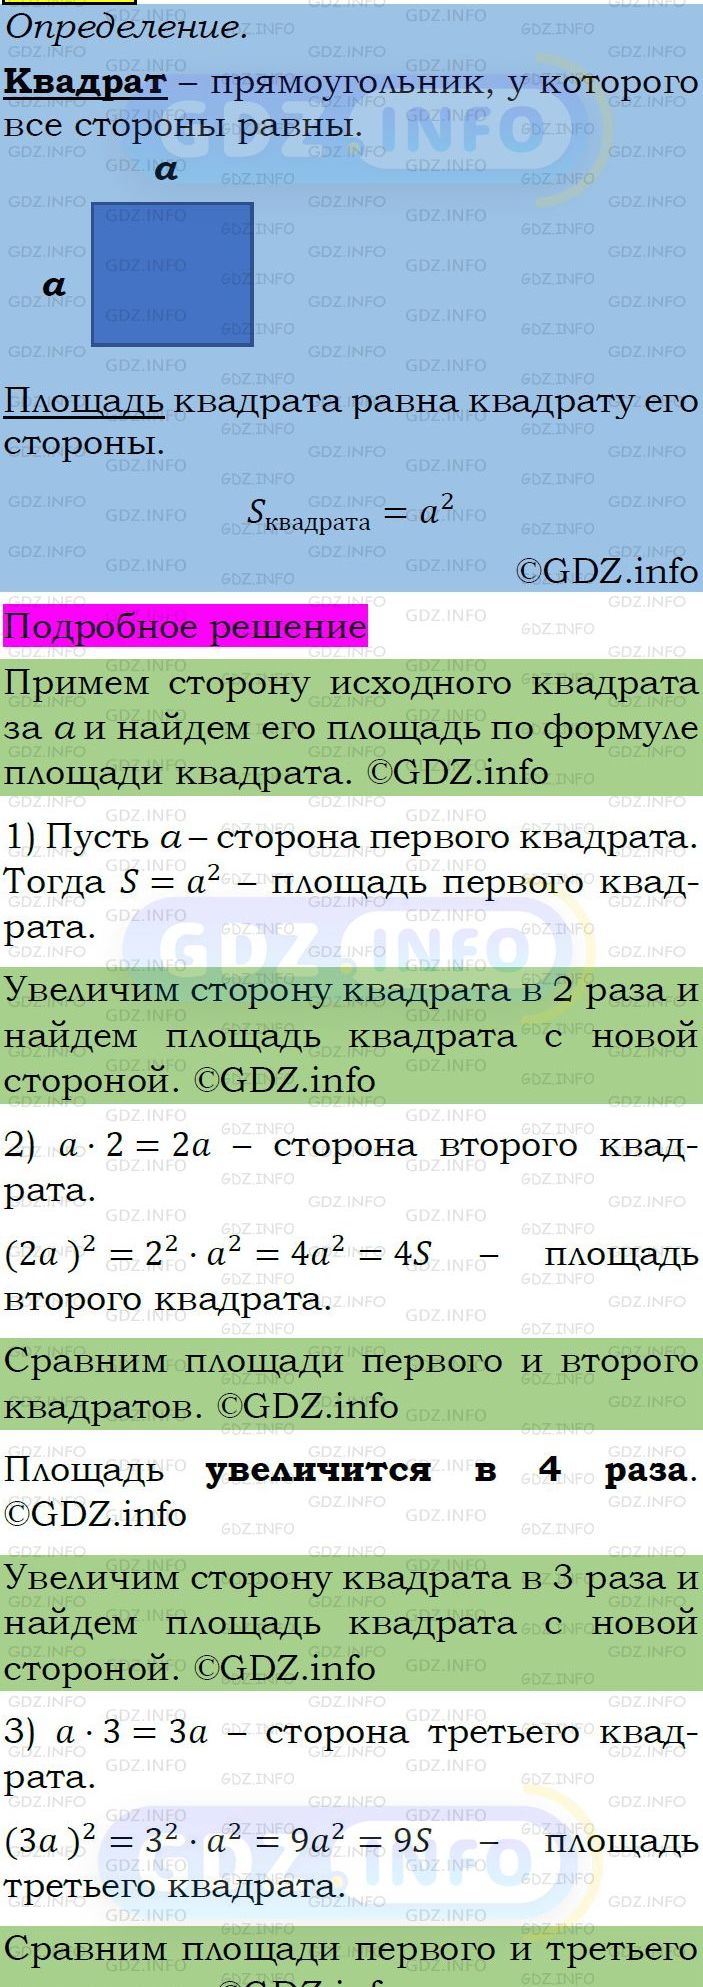 Фото подробного решения: Номер задания №447 из ГДЗ по Алгебре 7 класс: Макарычев Ю.Н.